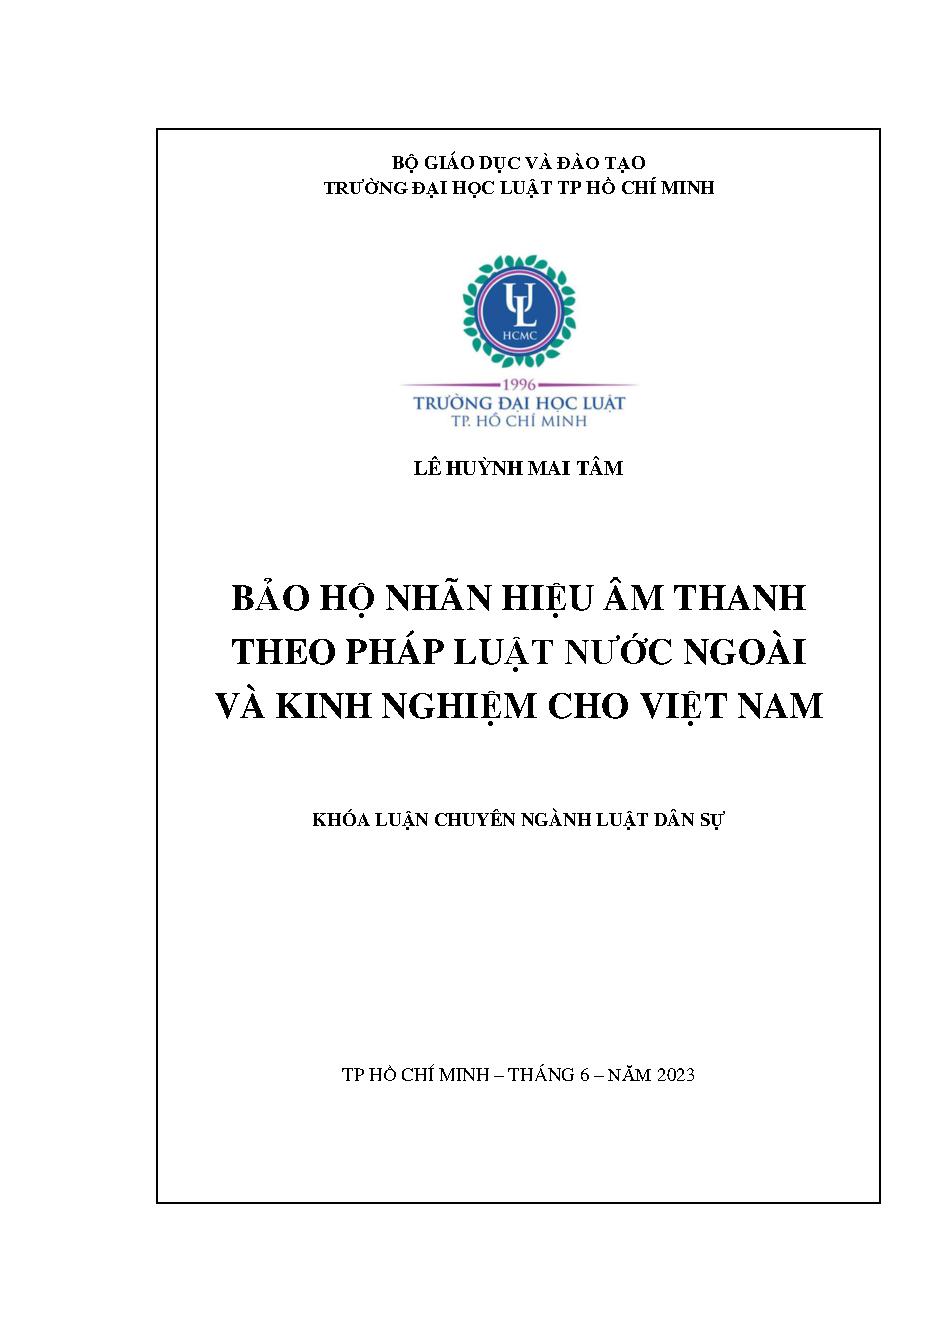 Bảo hộ nhãn hiệu âm thanh theo pháp luật nước ngoài và kinh nghiệm cho Việt Nam